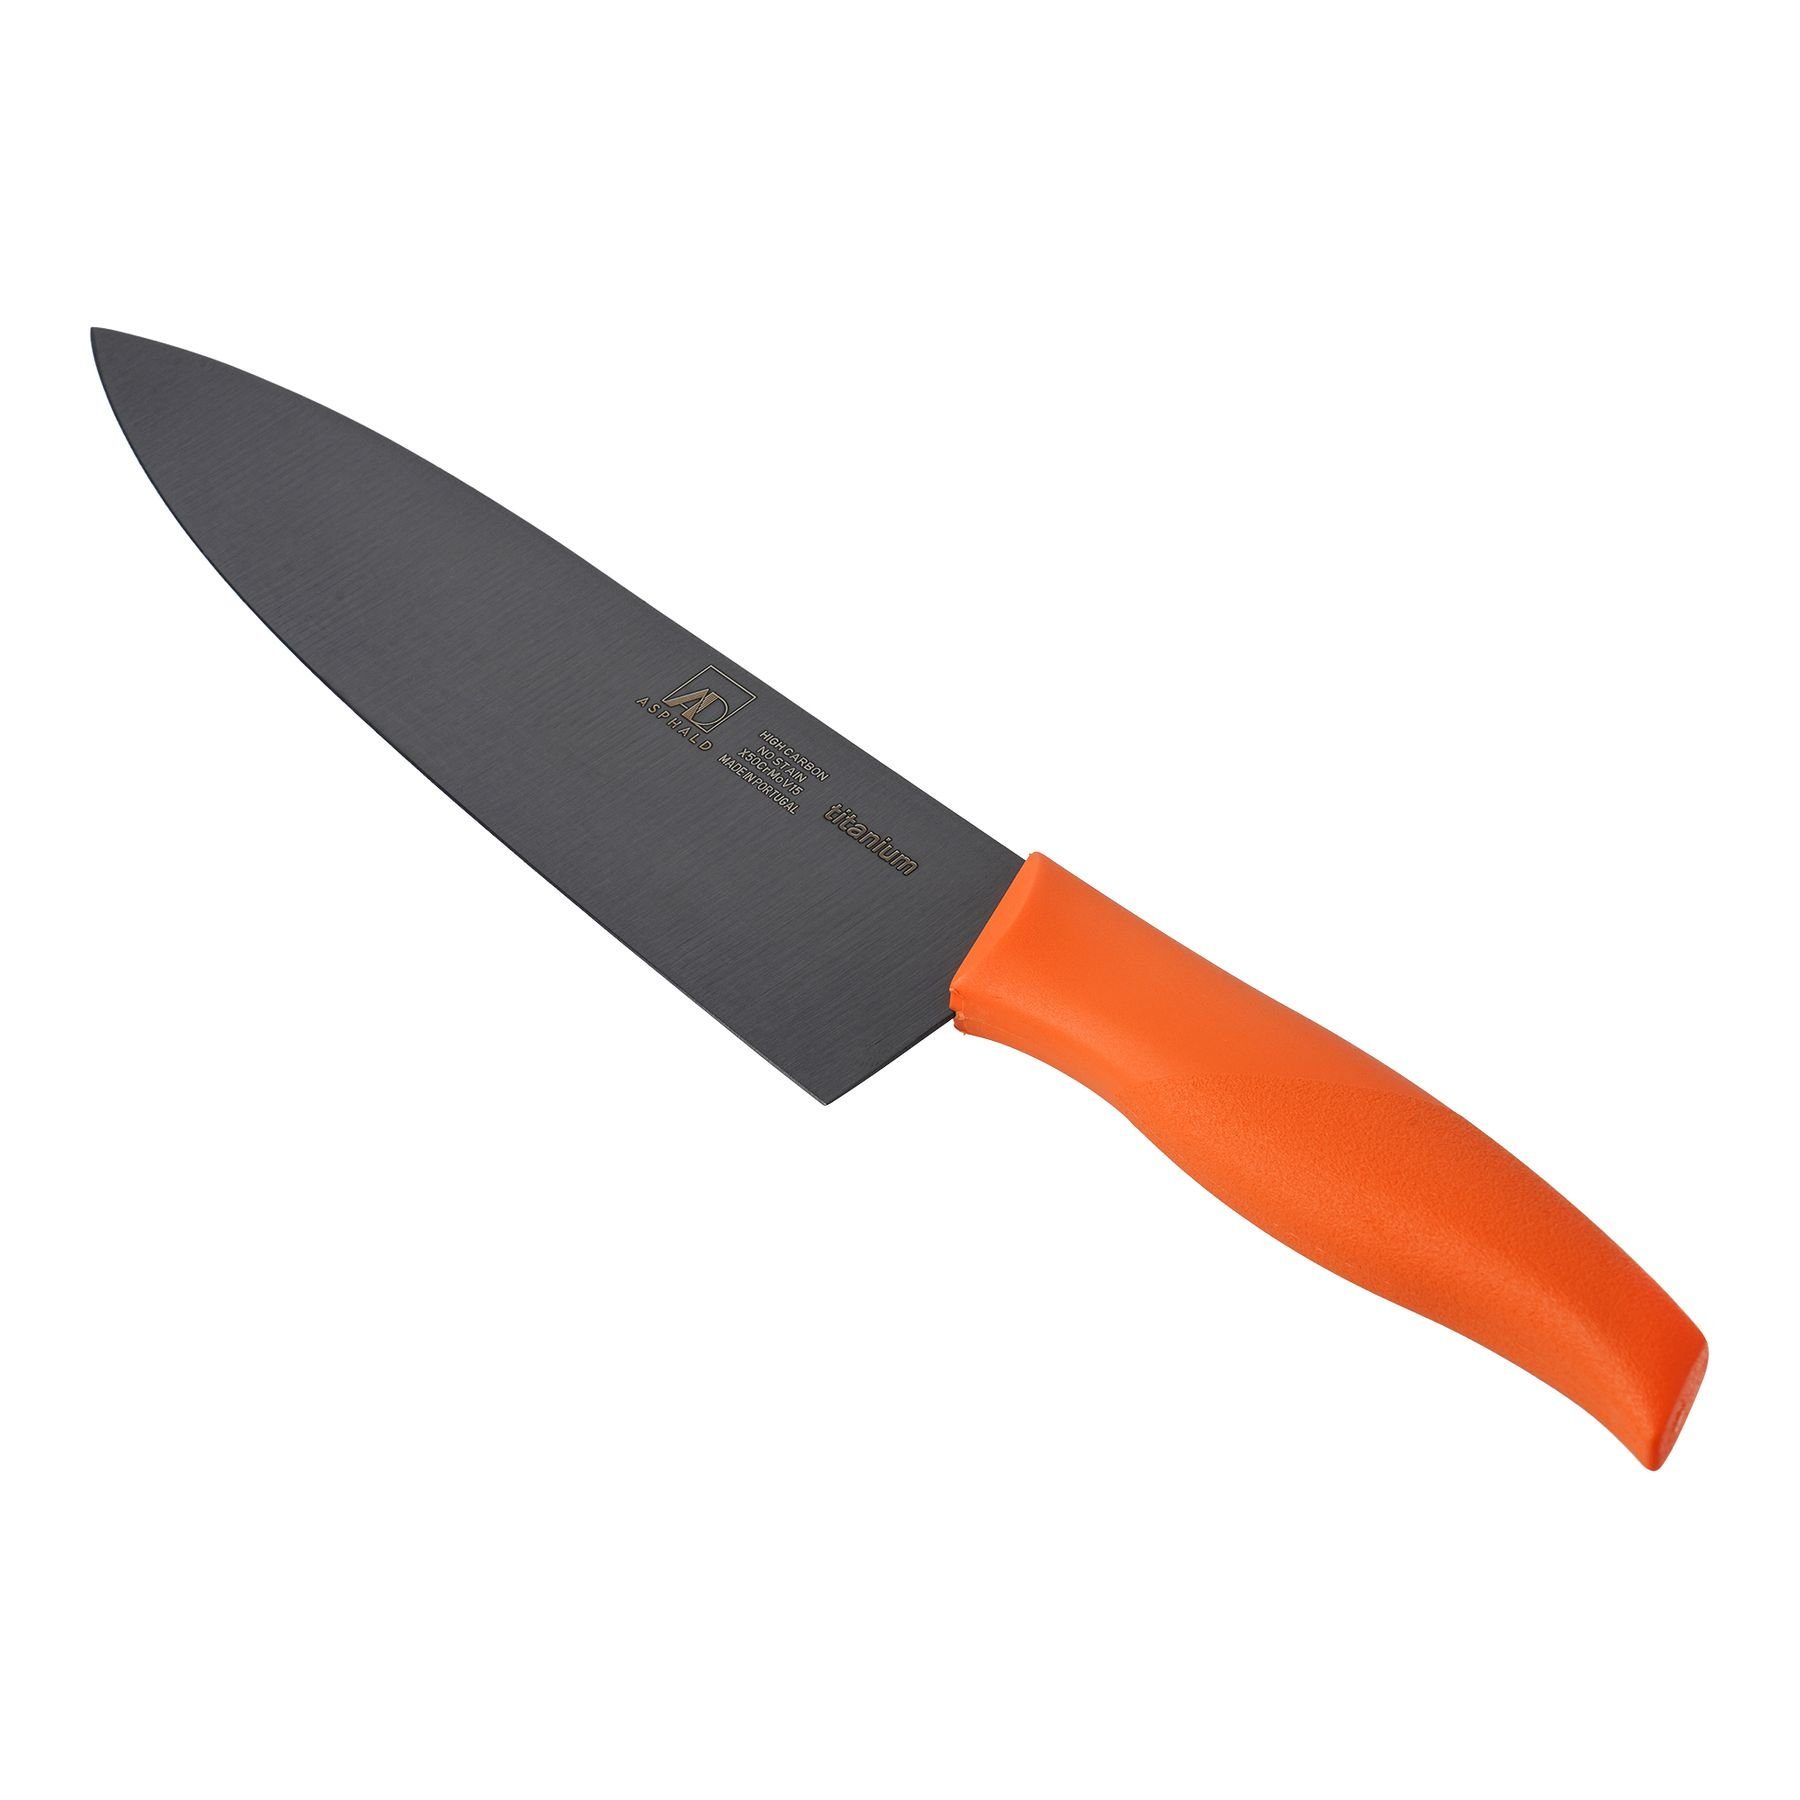 Asphald Allzweckmesser Chefmesser Kochmesser Titan Klinge Orange Griff Titanmesser, aus einem Stück geschmiedet | Spickmesser